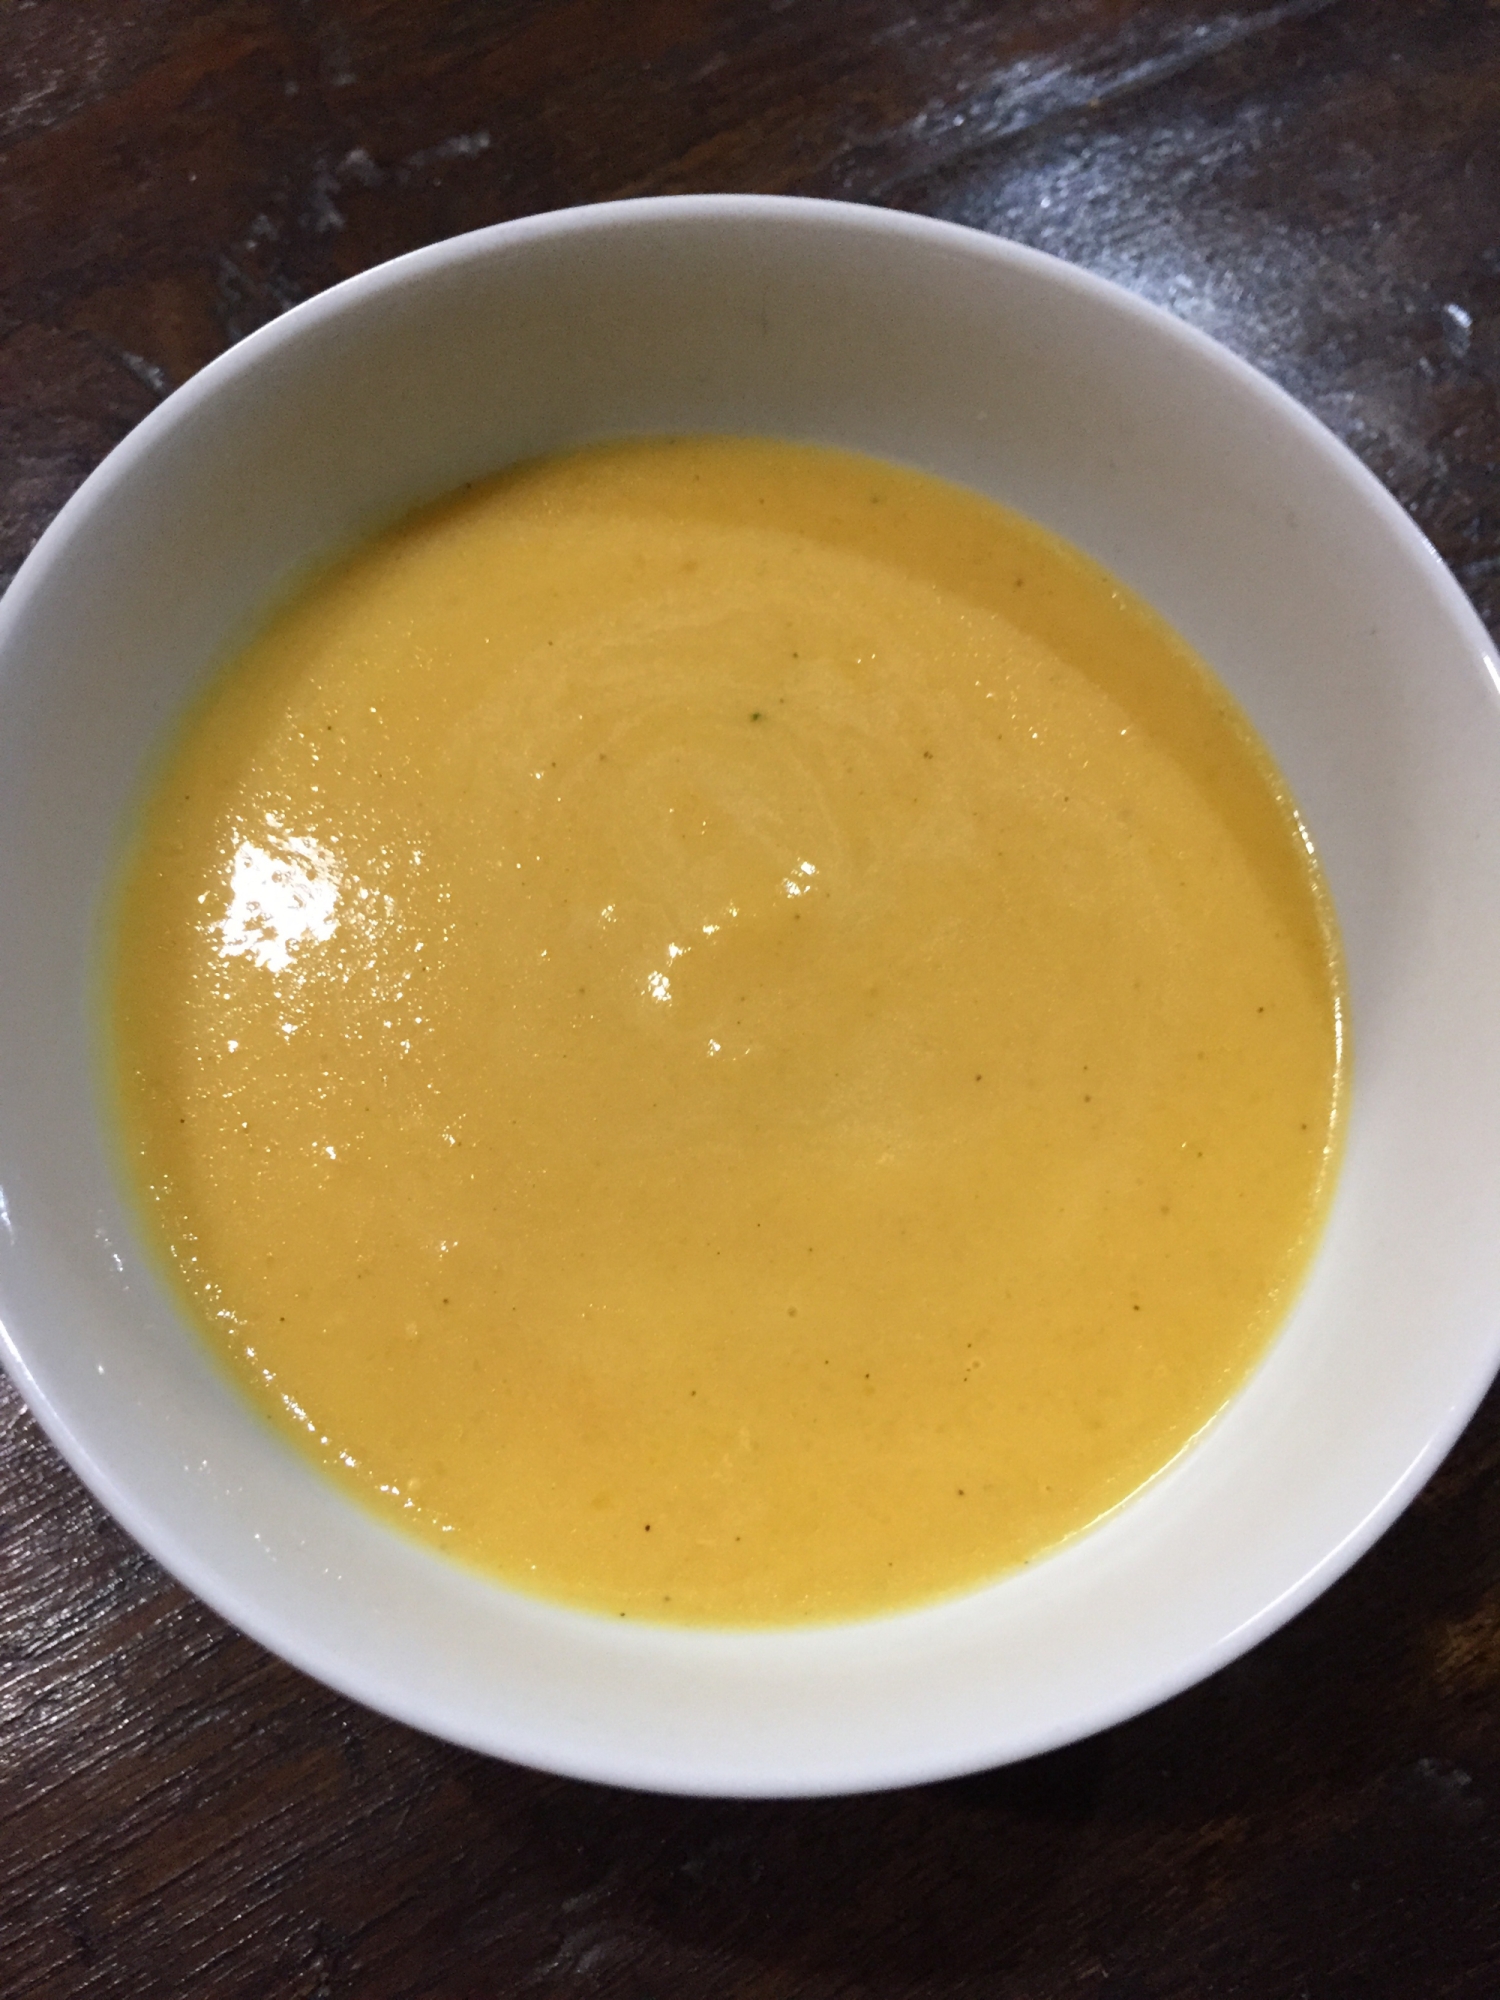 にんじんとかぼちゃのスープ